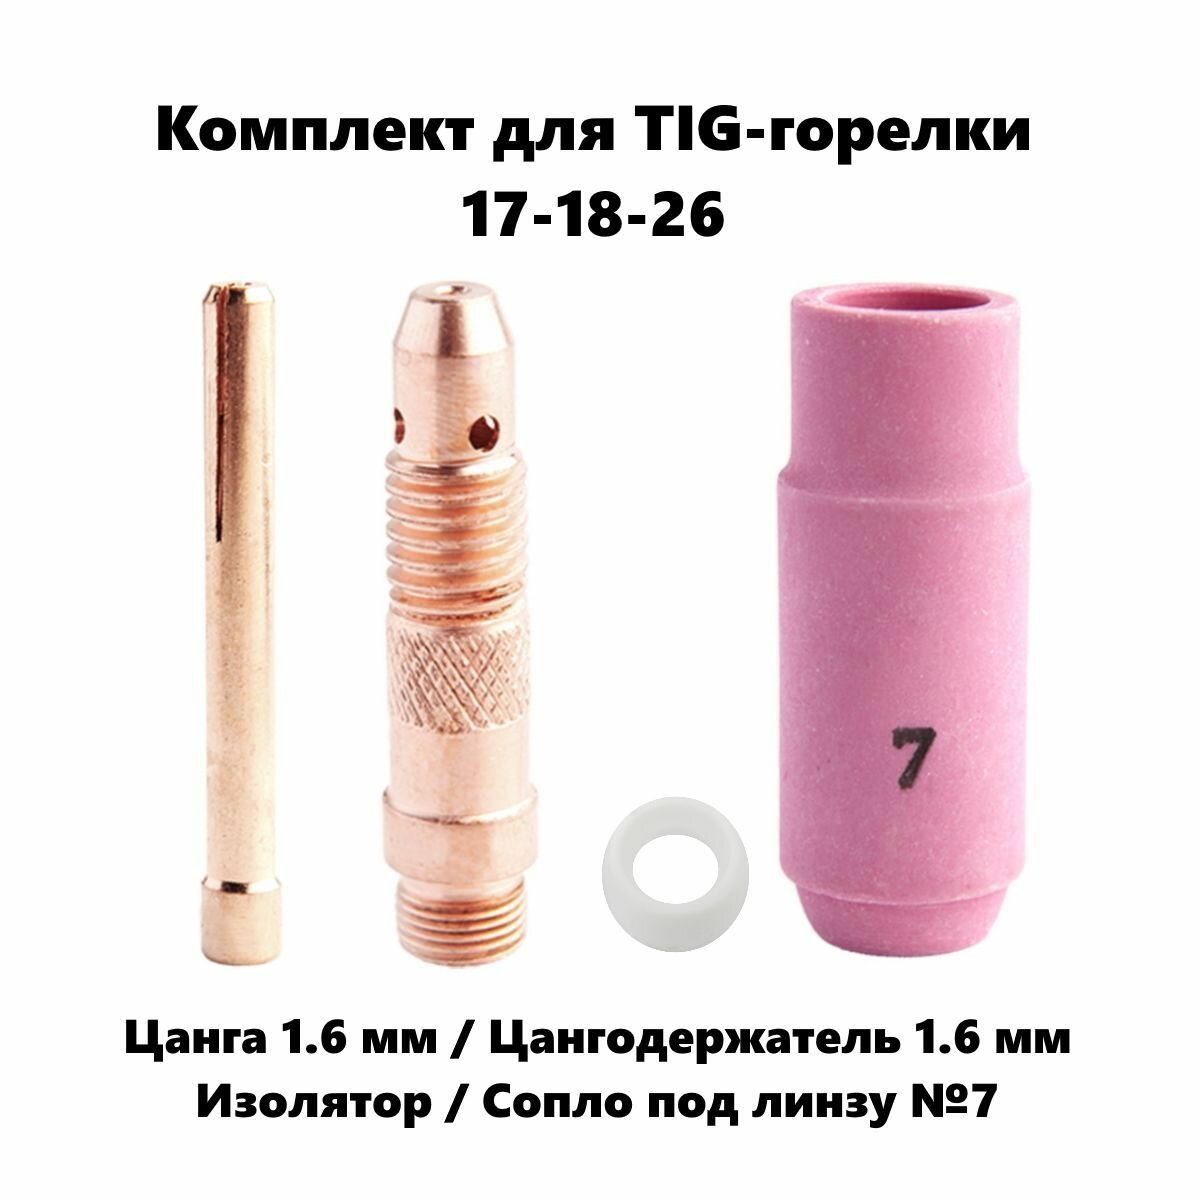 Набор 1.6 мм цанга, Сопло керамическое №7, цангодержатель, изолятор для TIG горелки (17-18-26)